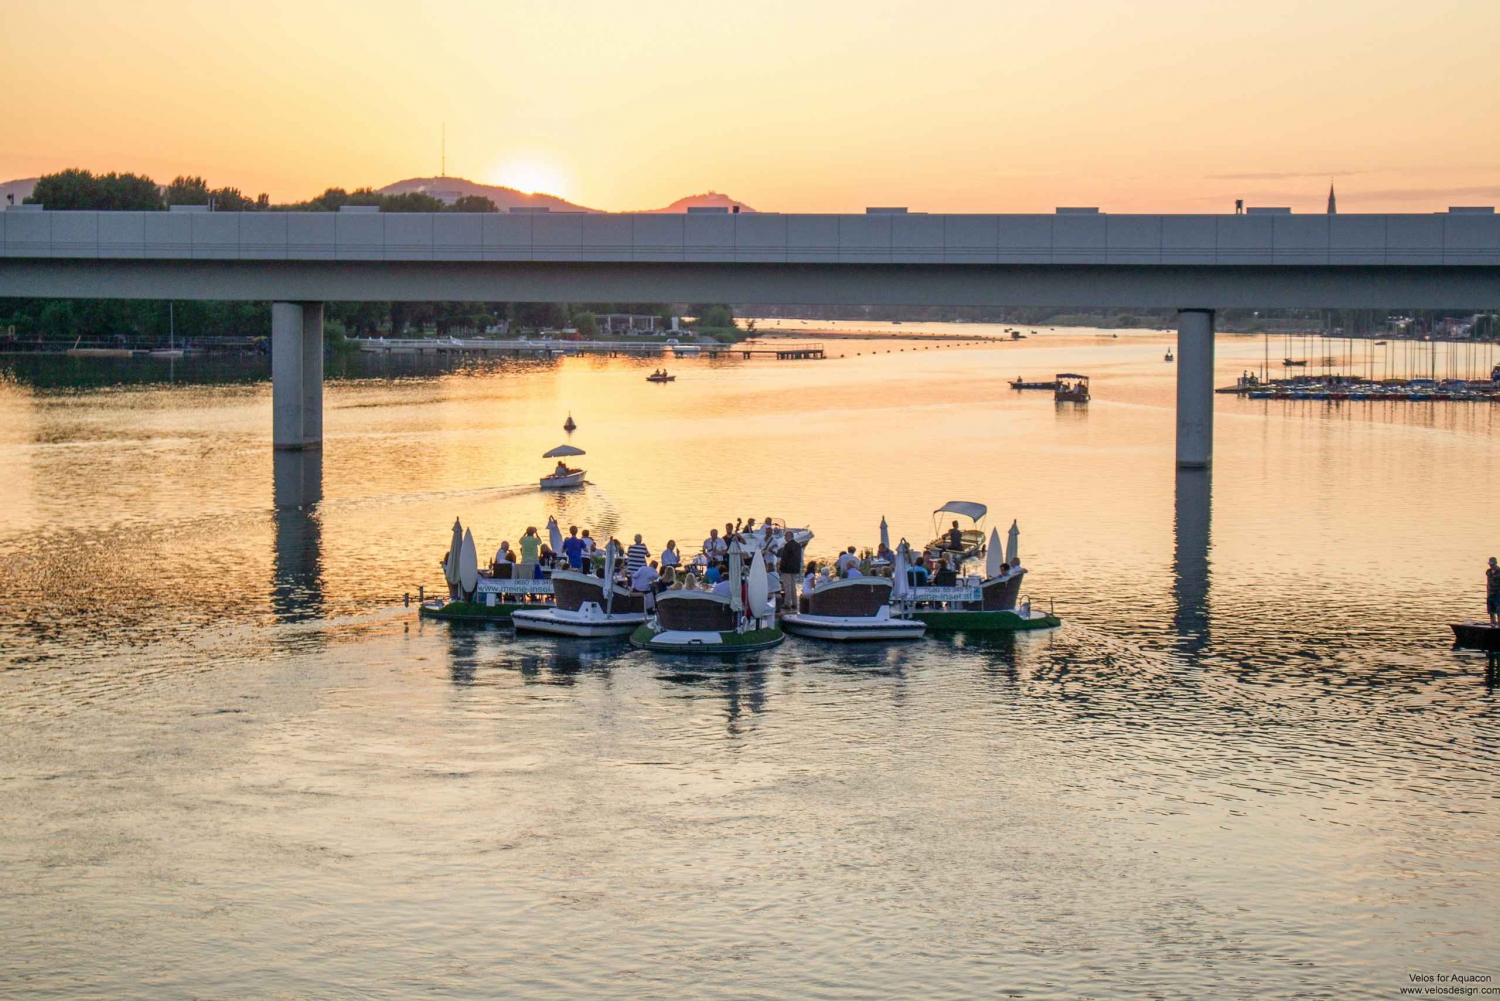 Viena: Alquiler de E-Boat con cena incluida al atardecer en el Danubio